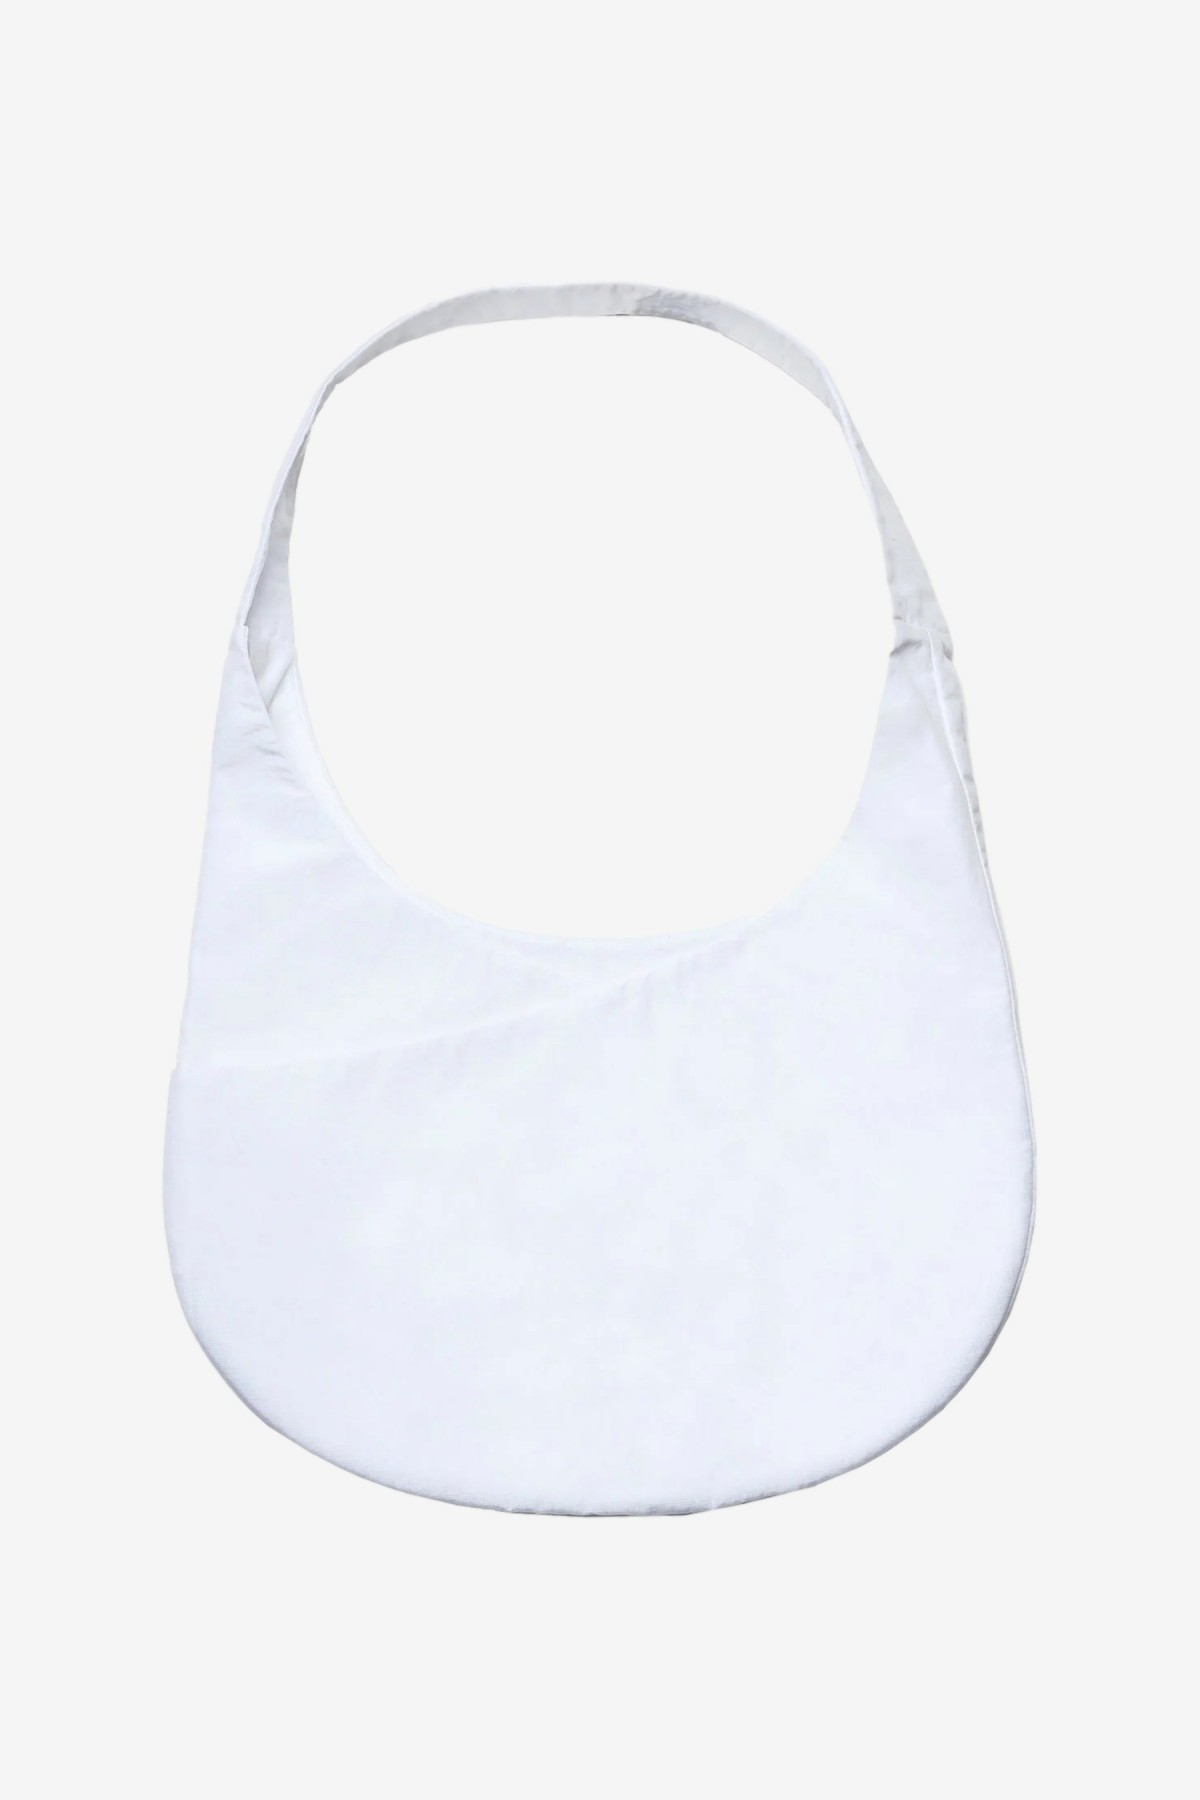 CoA NYC Hobo Bag in White